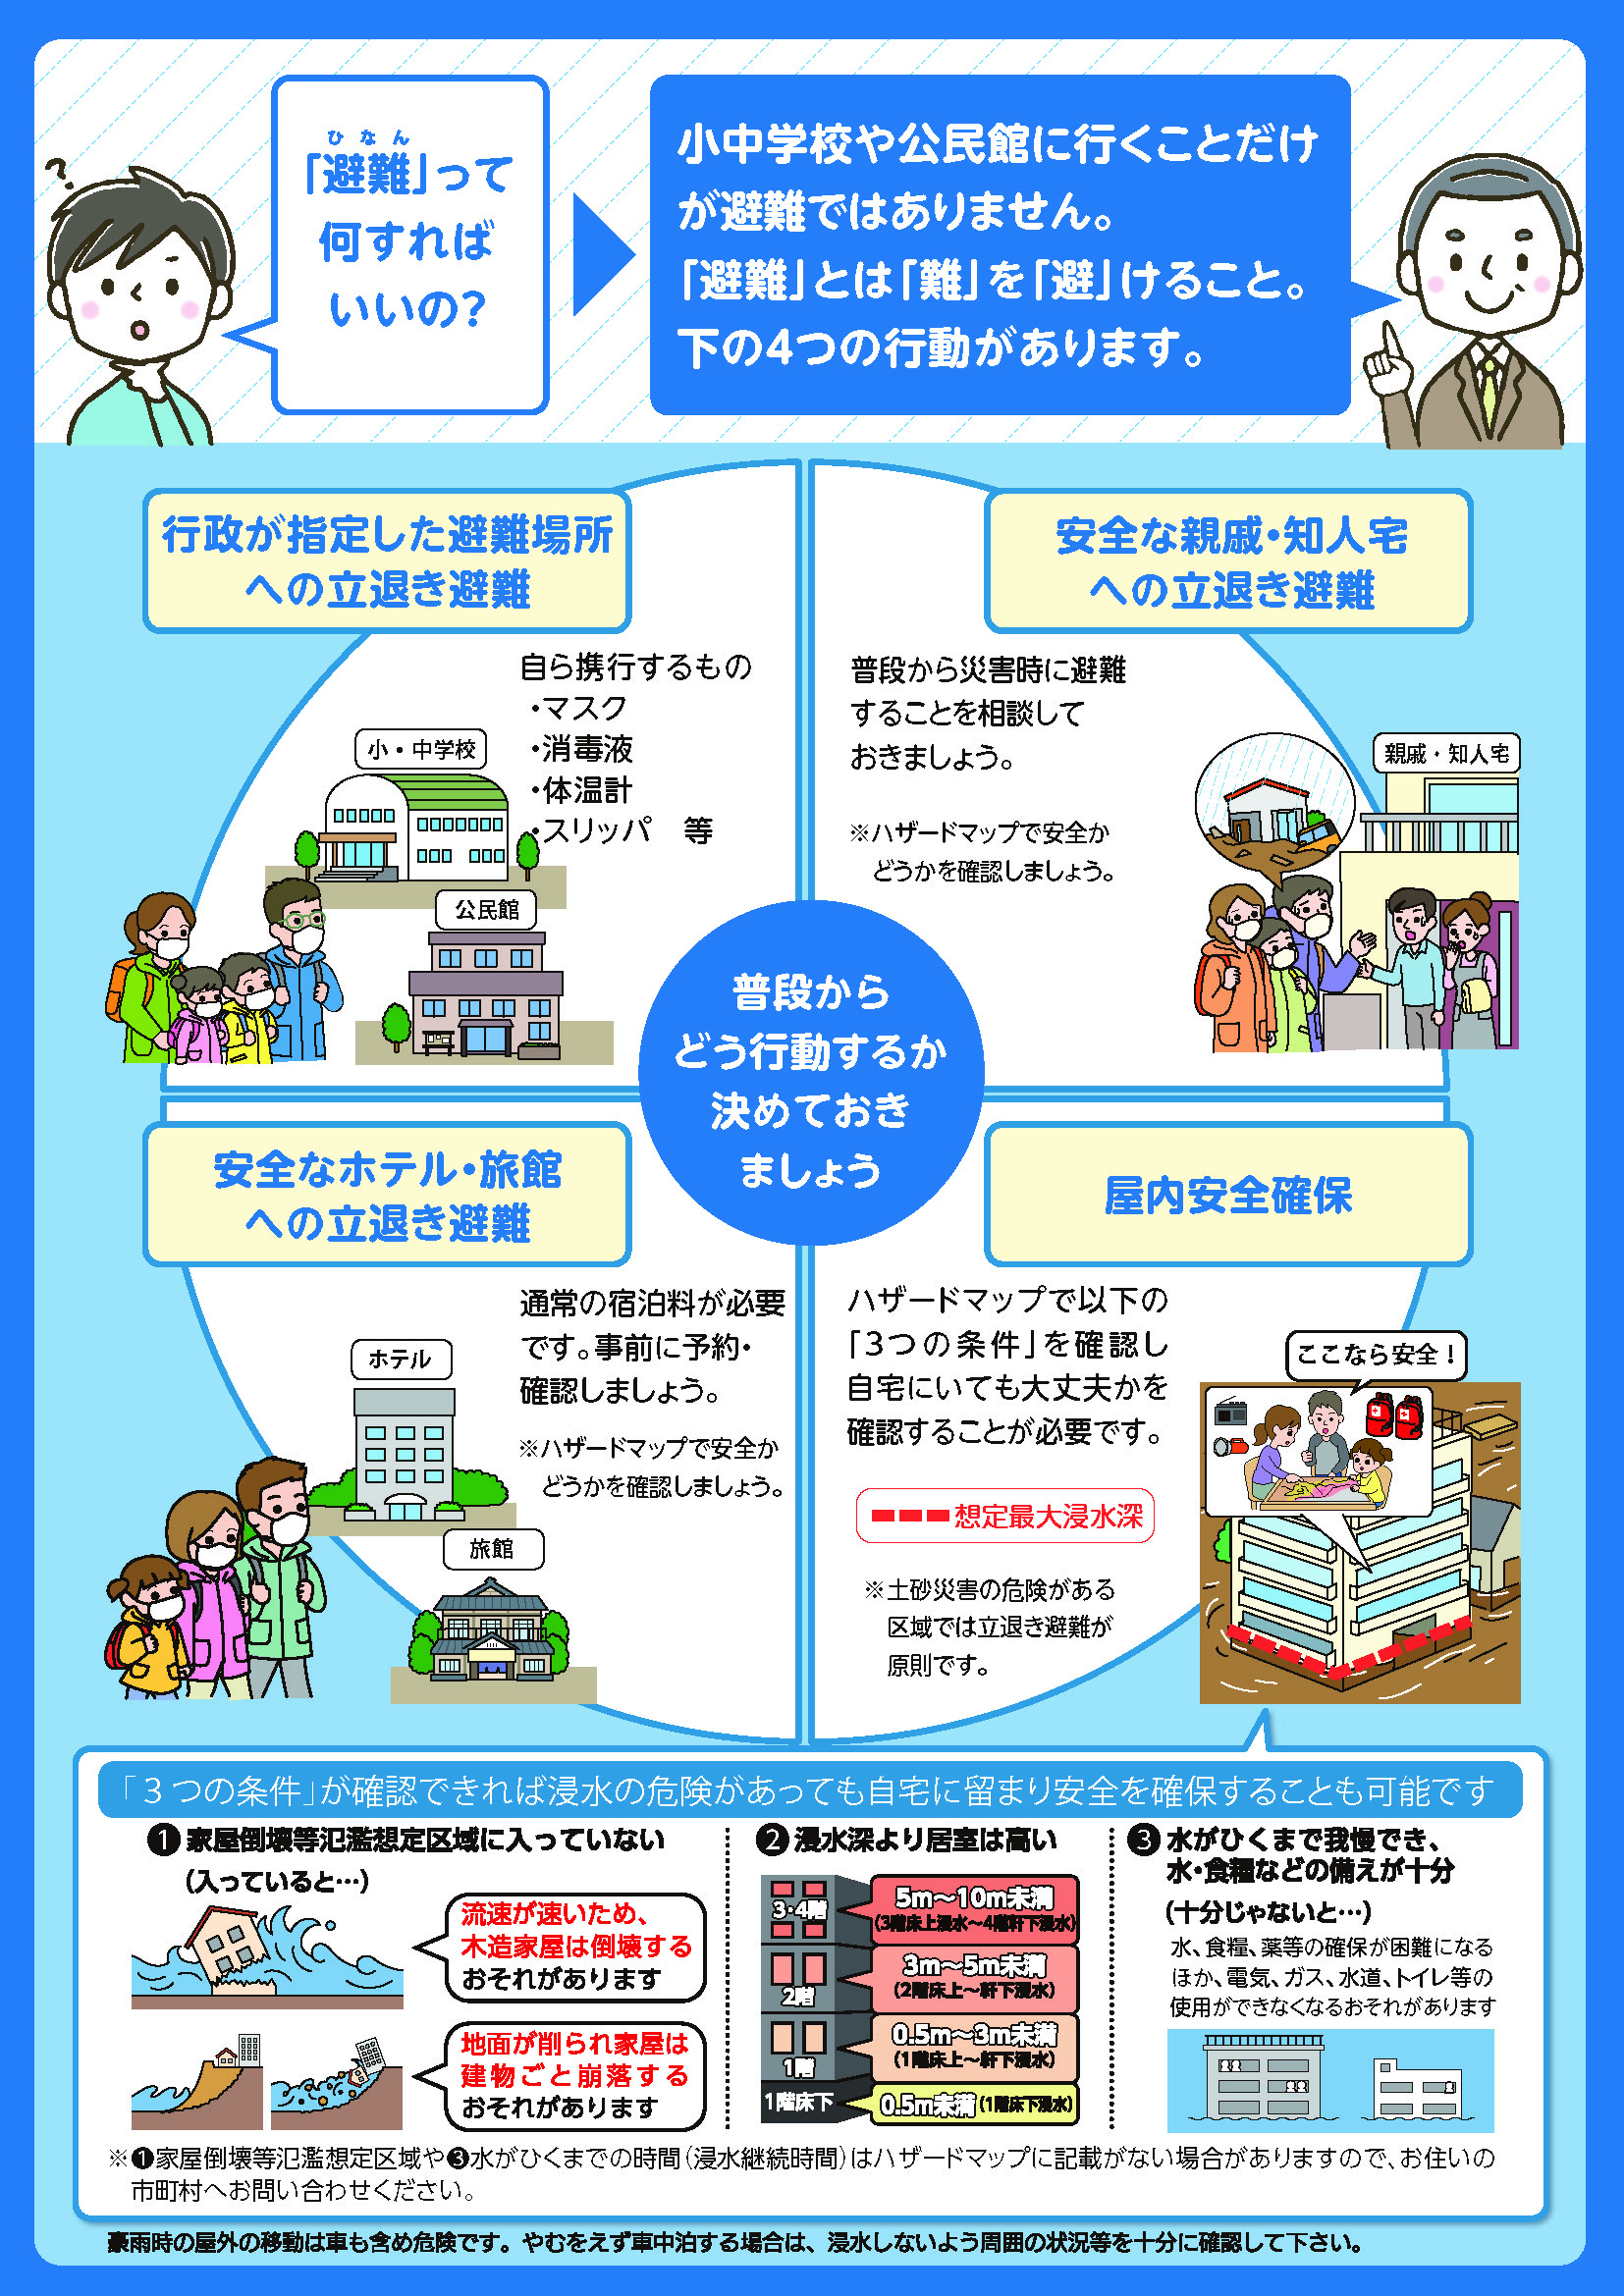 https://www.town.kamiyama.lg.jp/office/soumu/image/poster2.jpg